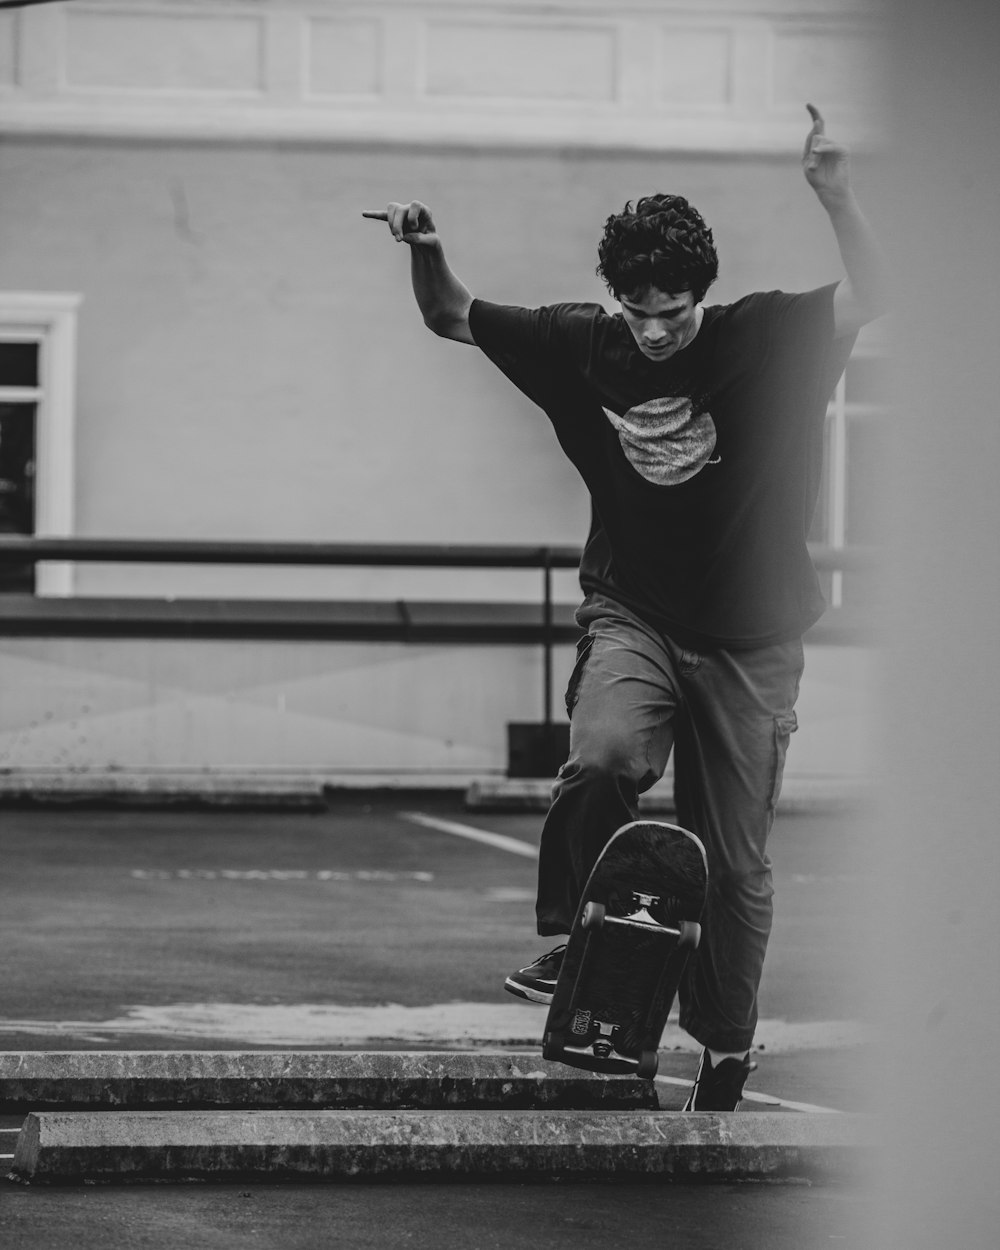 Mann in schwarzem Langarmhemd und Hose sitzt auf Skateboard in Graustufenfotografie